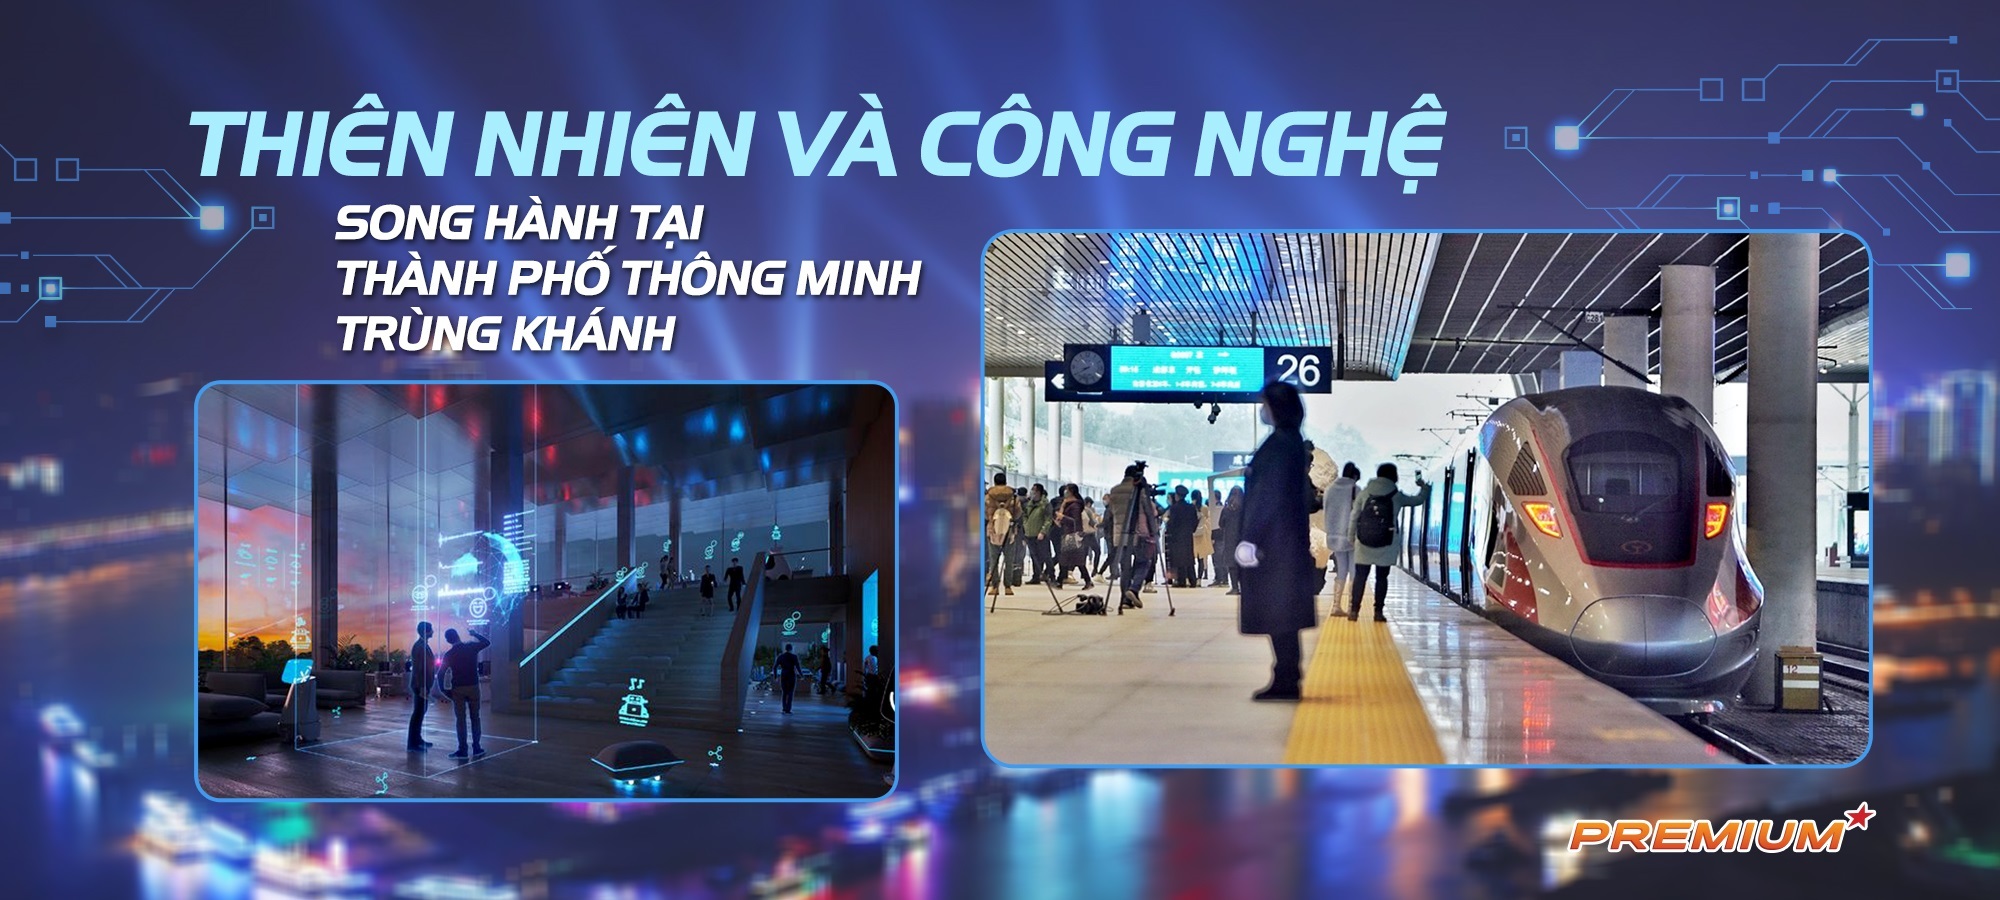 Thiên nhiên và công nghệ song hành tại thành phố thông minh Trùng Khánh